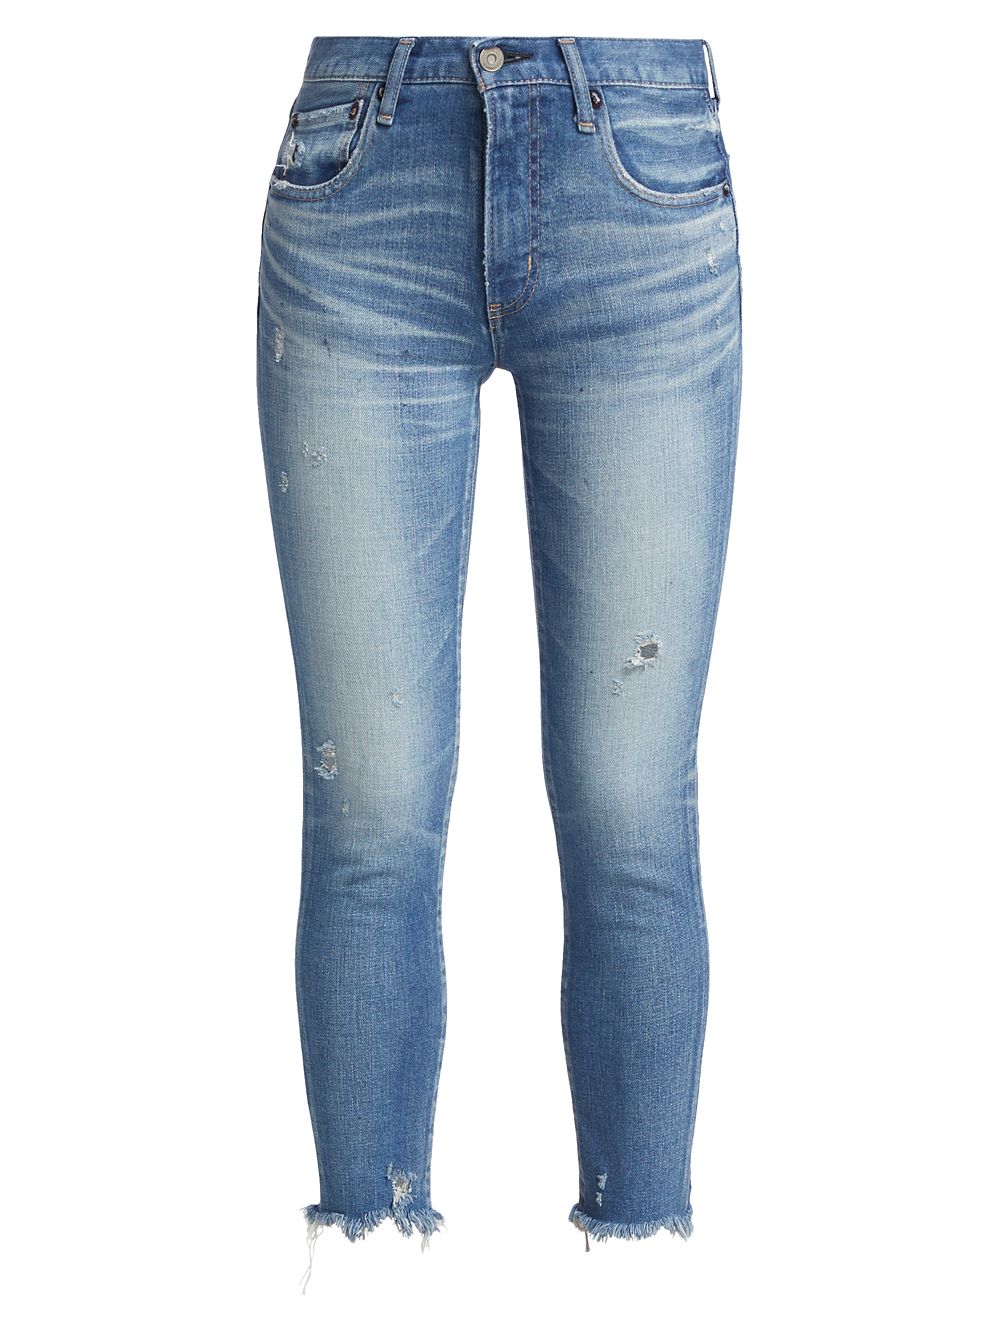 Эластичные джинсы скинни с эффектом потертости Diana Moussy Vintage, синий